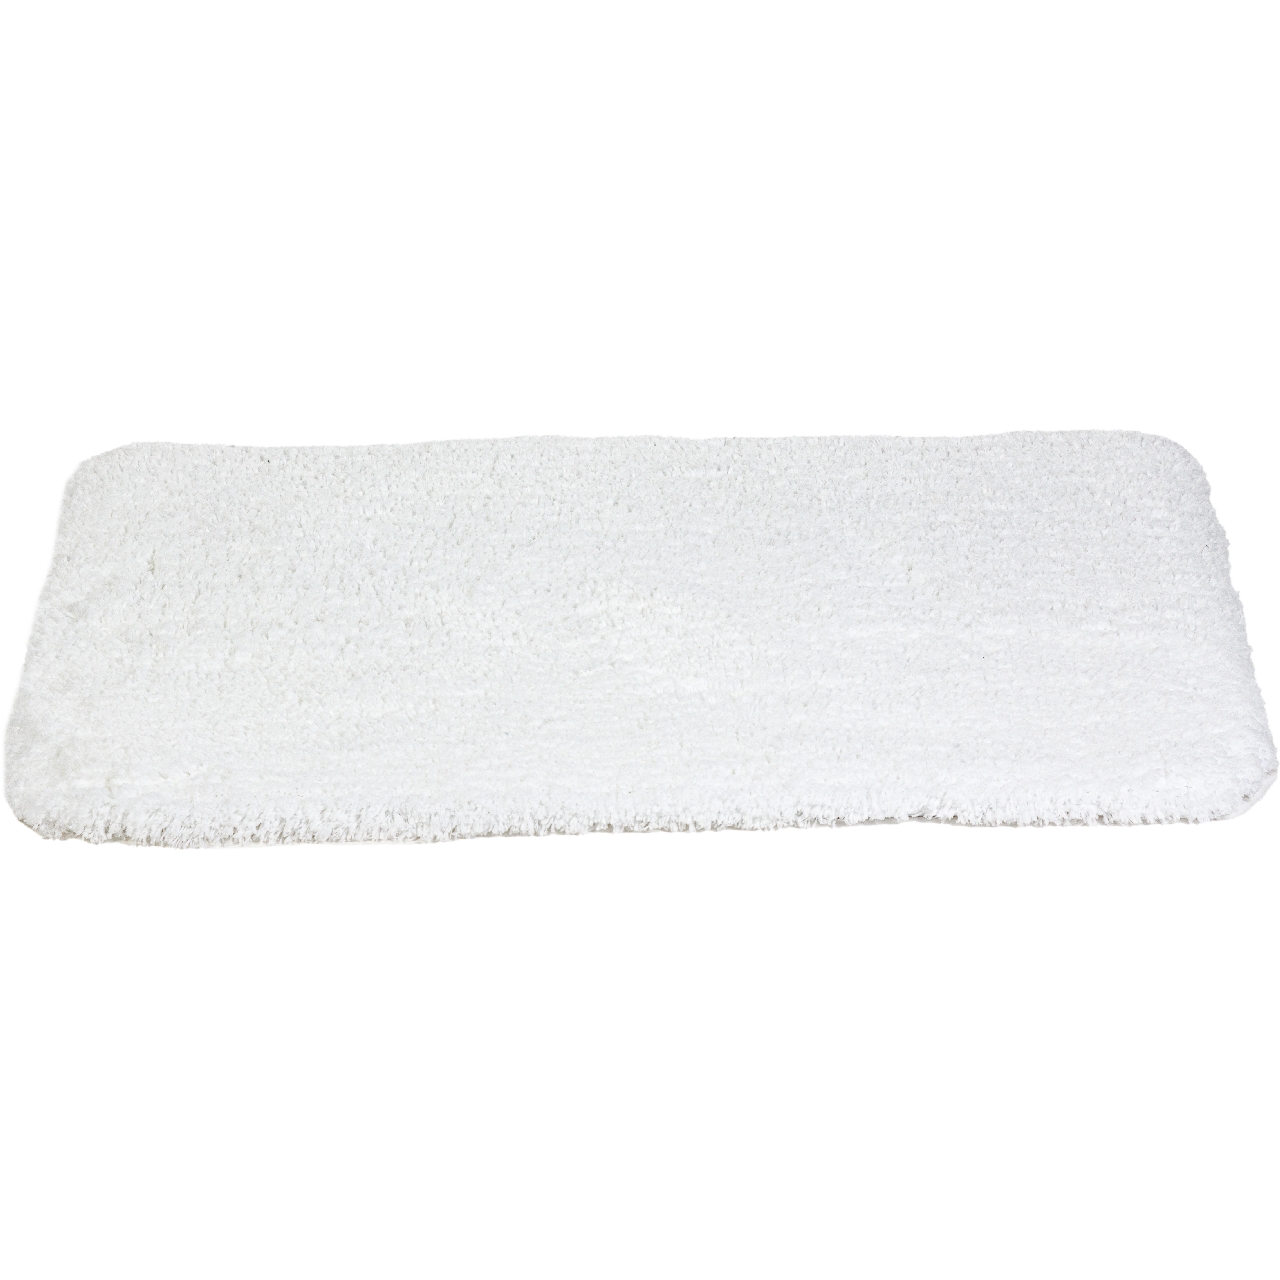 Коврик для ванной Lamb белый, 60 x 90 см (Spirella 1015273)